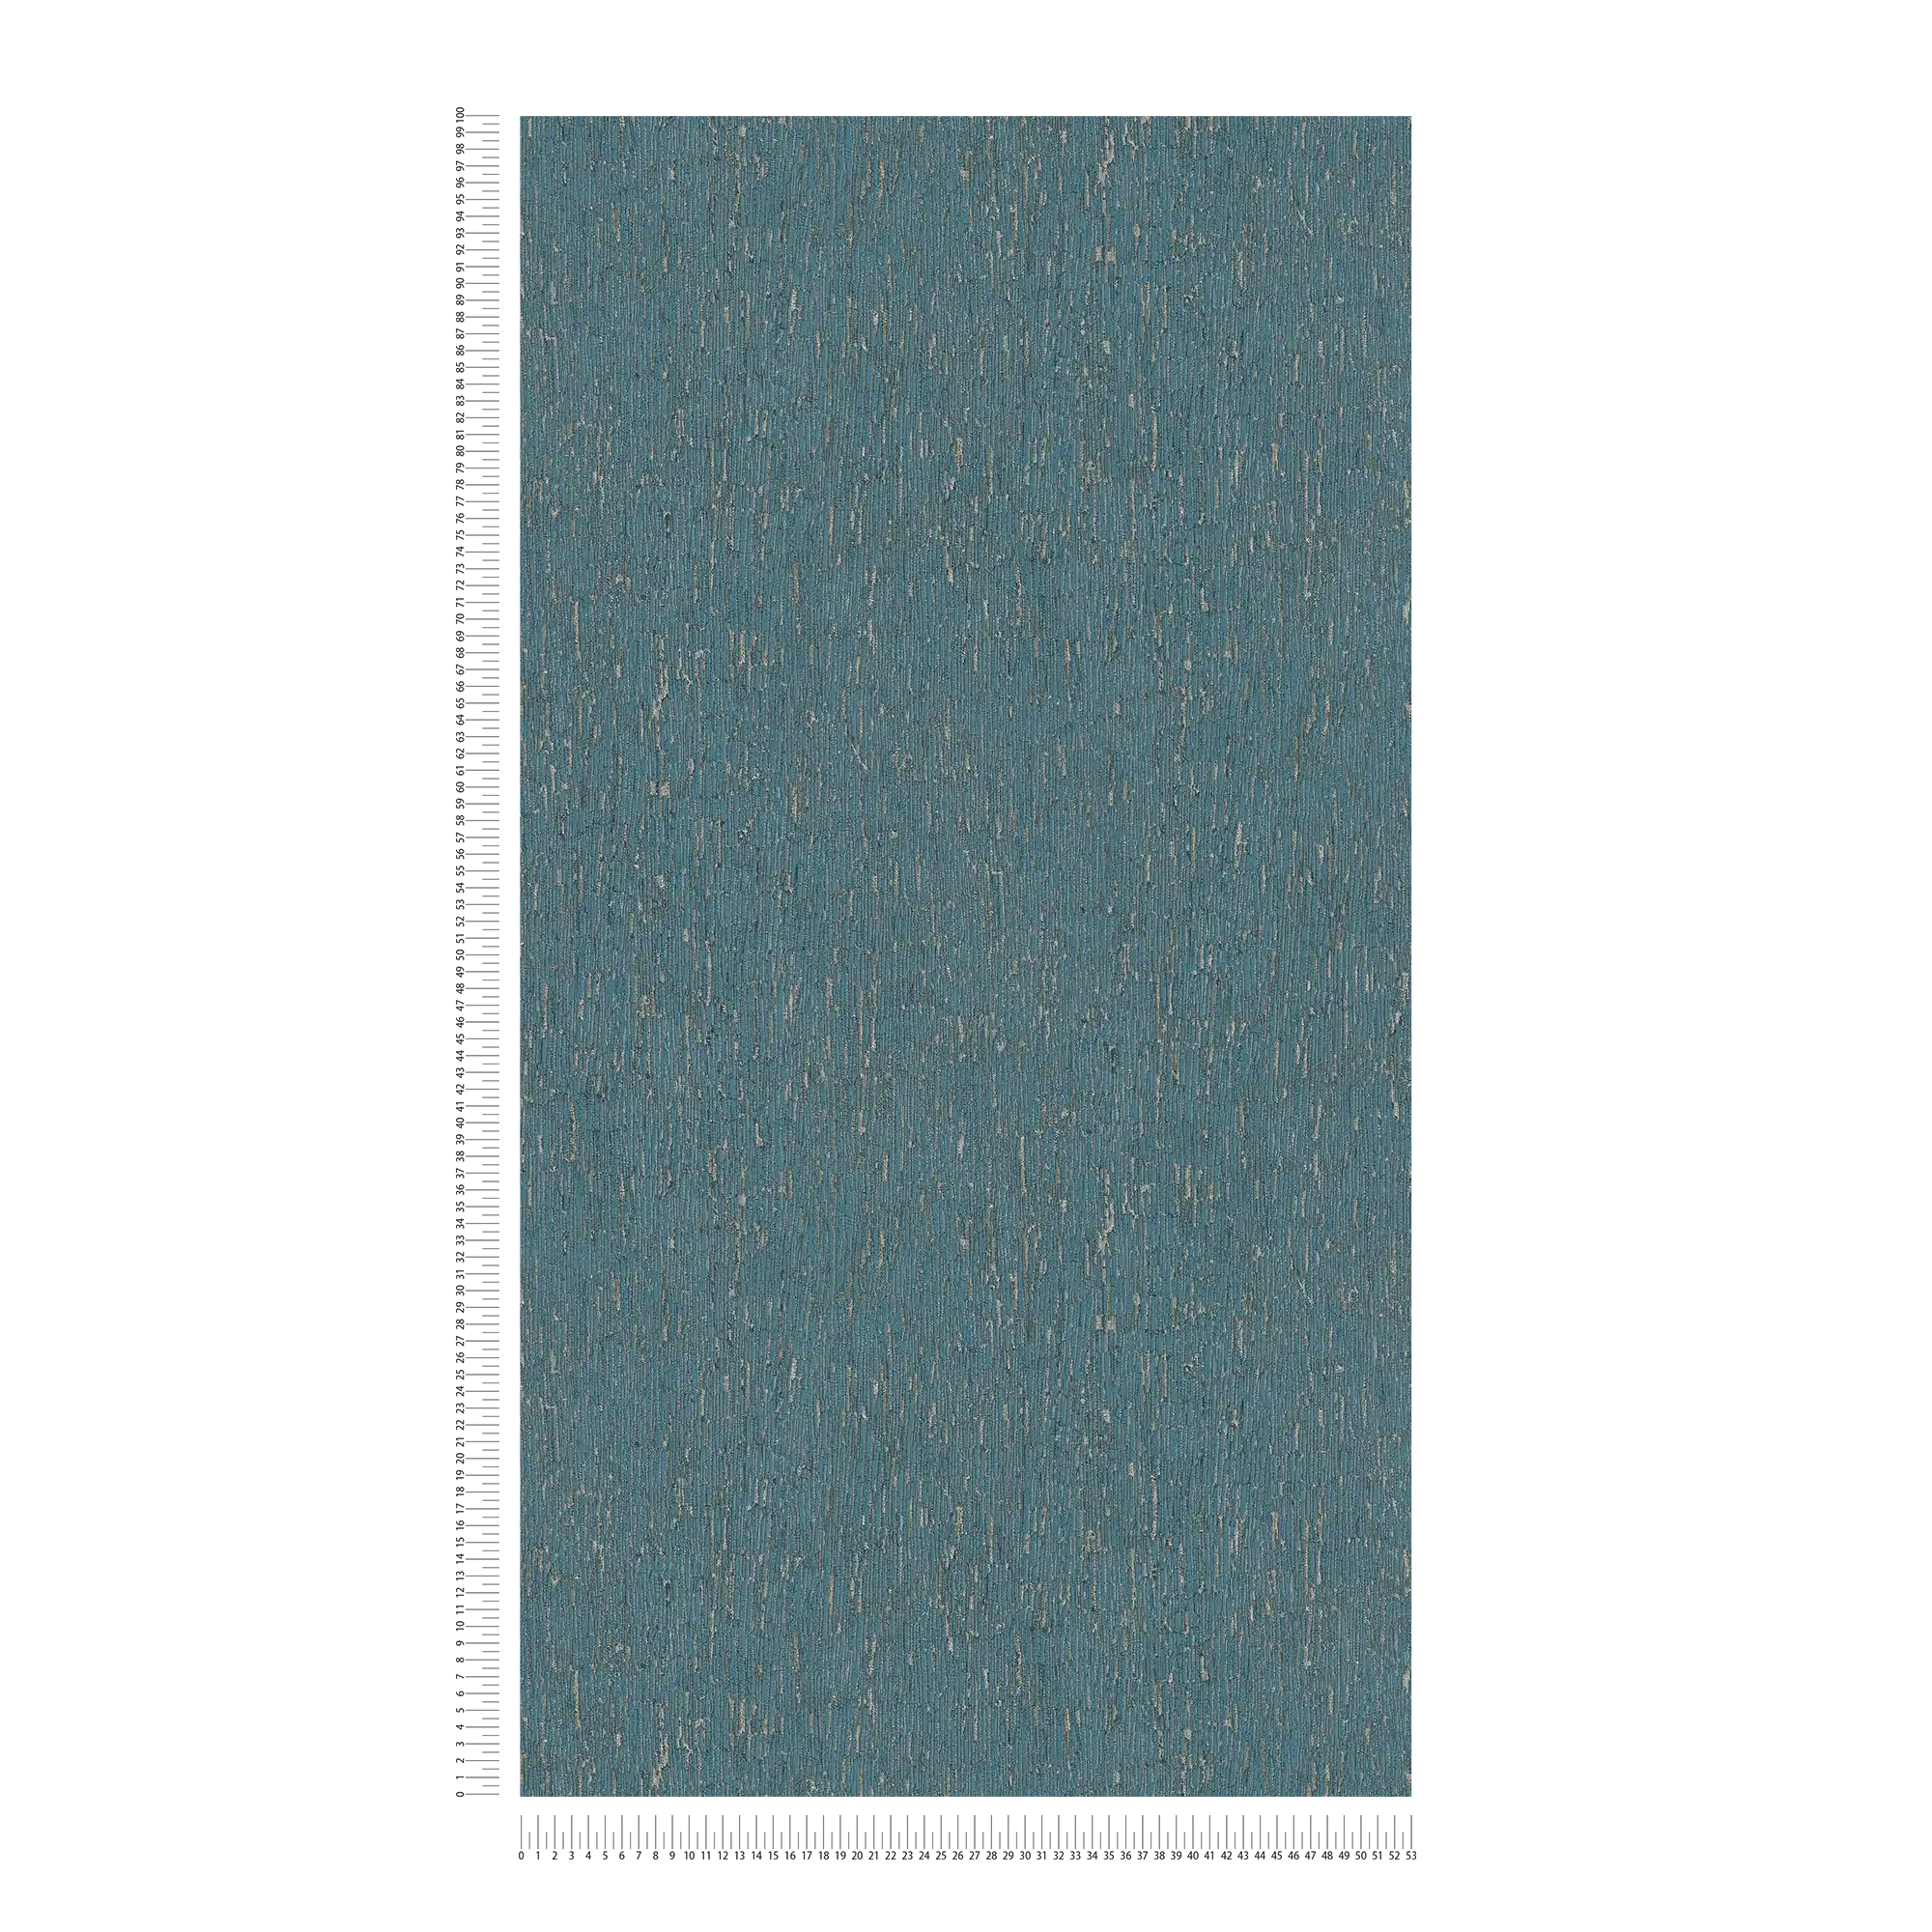             papier peint en papier intissé aspect plâtre avec des accents dorés - bleu, pétrole, argent
        